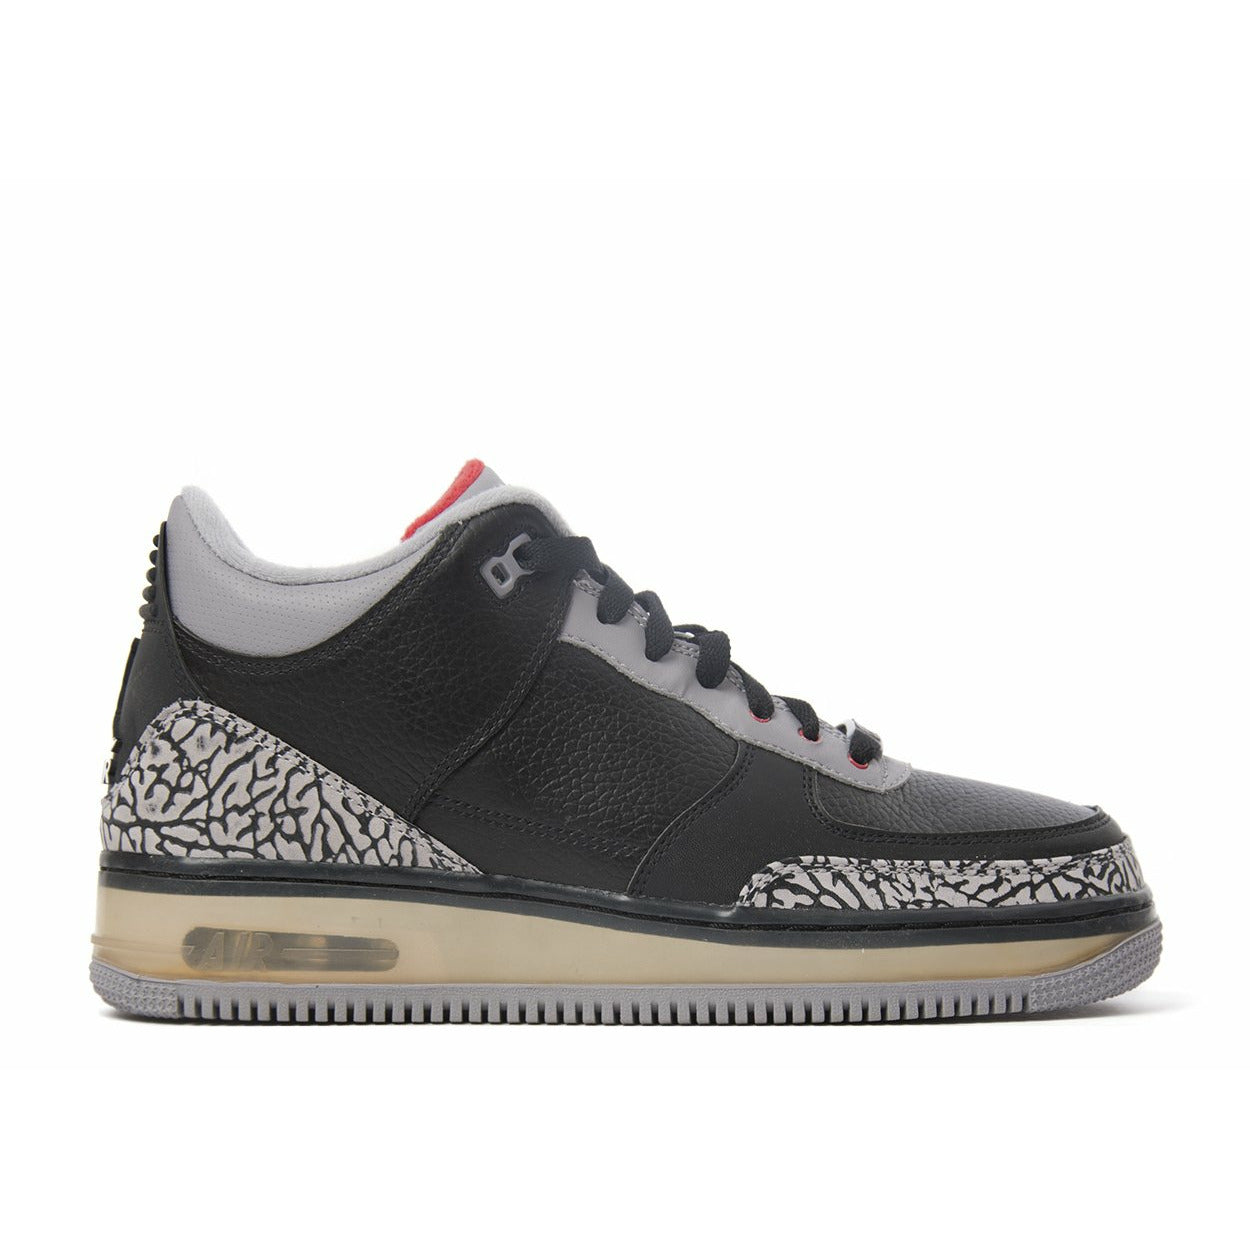 Air Jordan Fusion “Black 3) mrsneaker